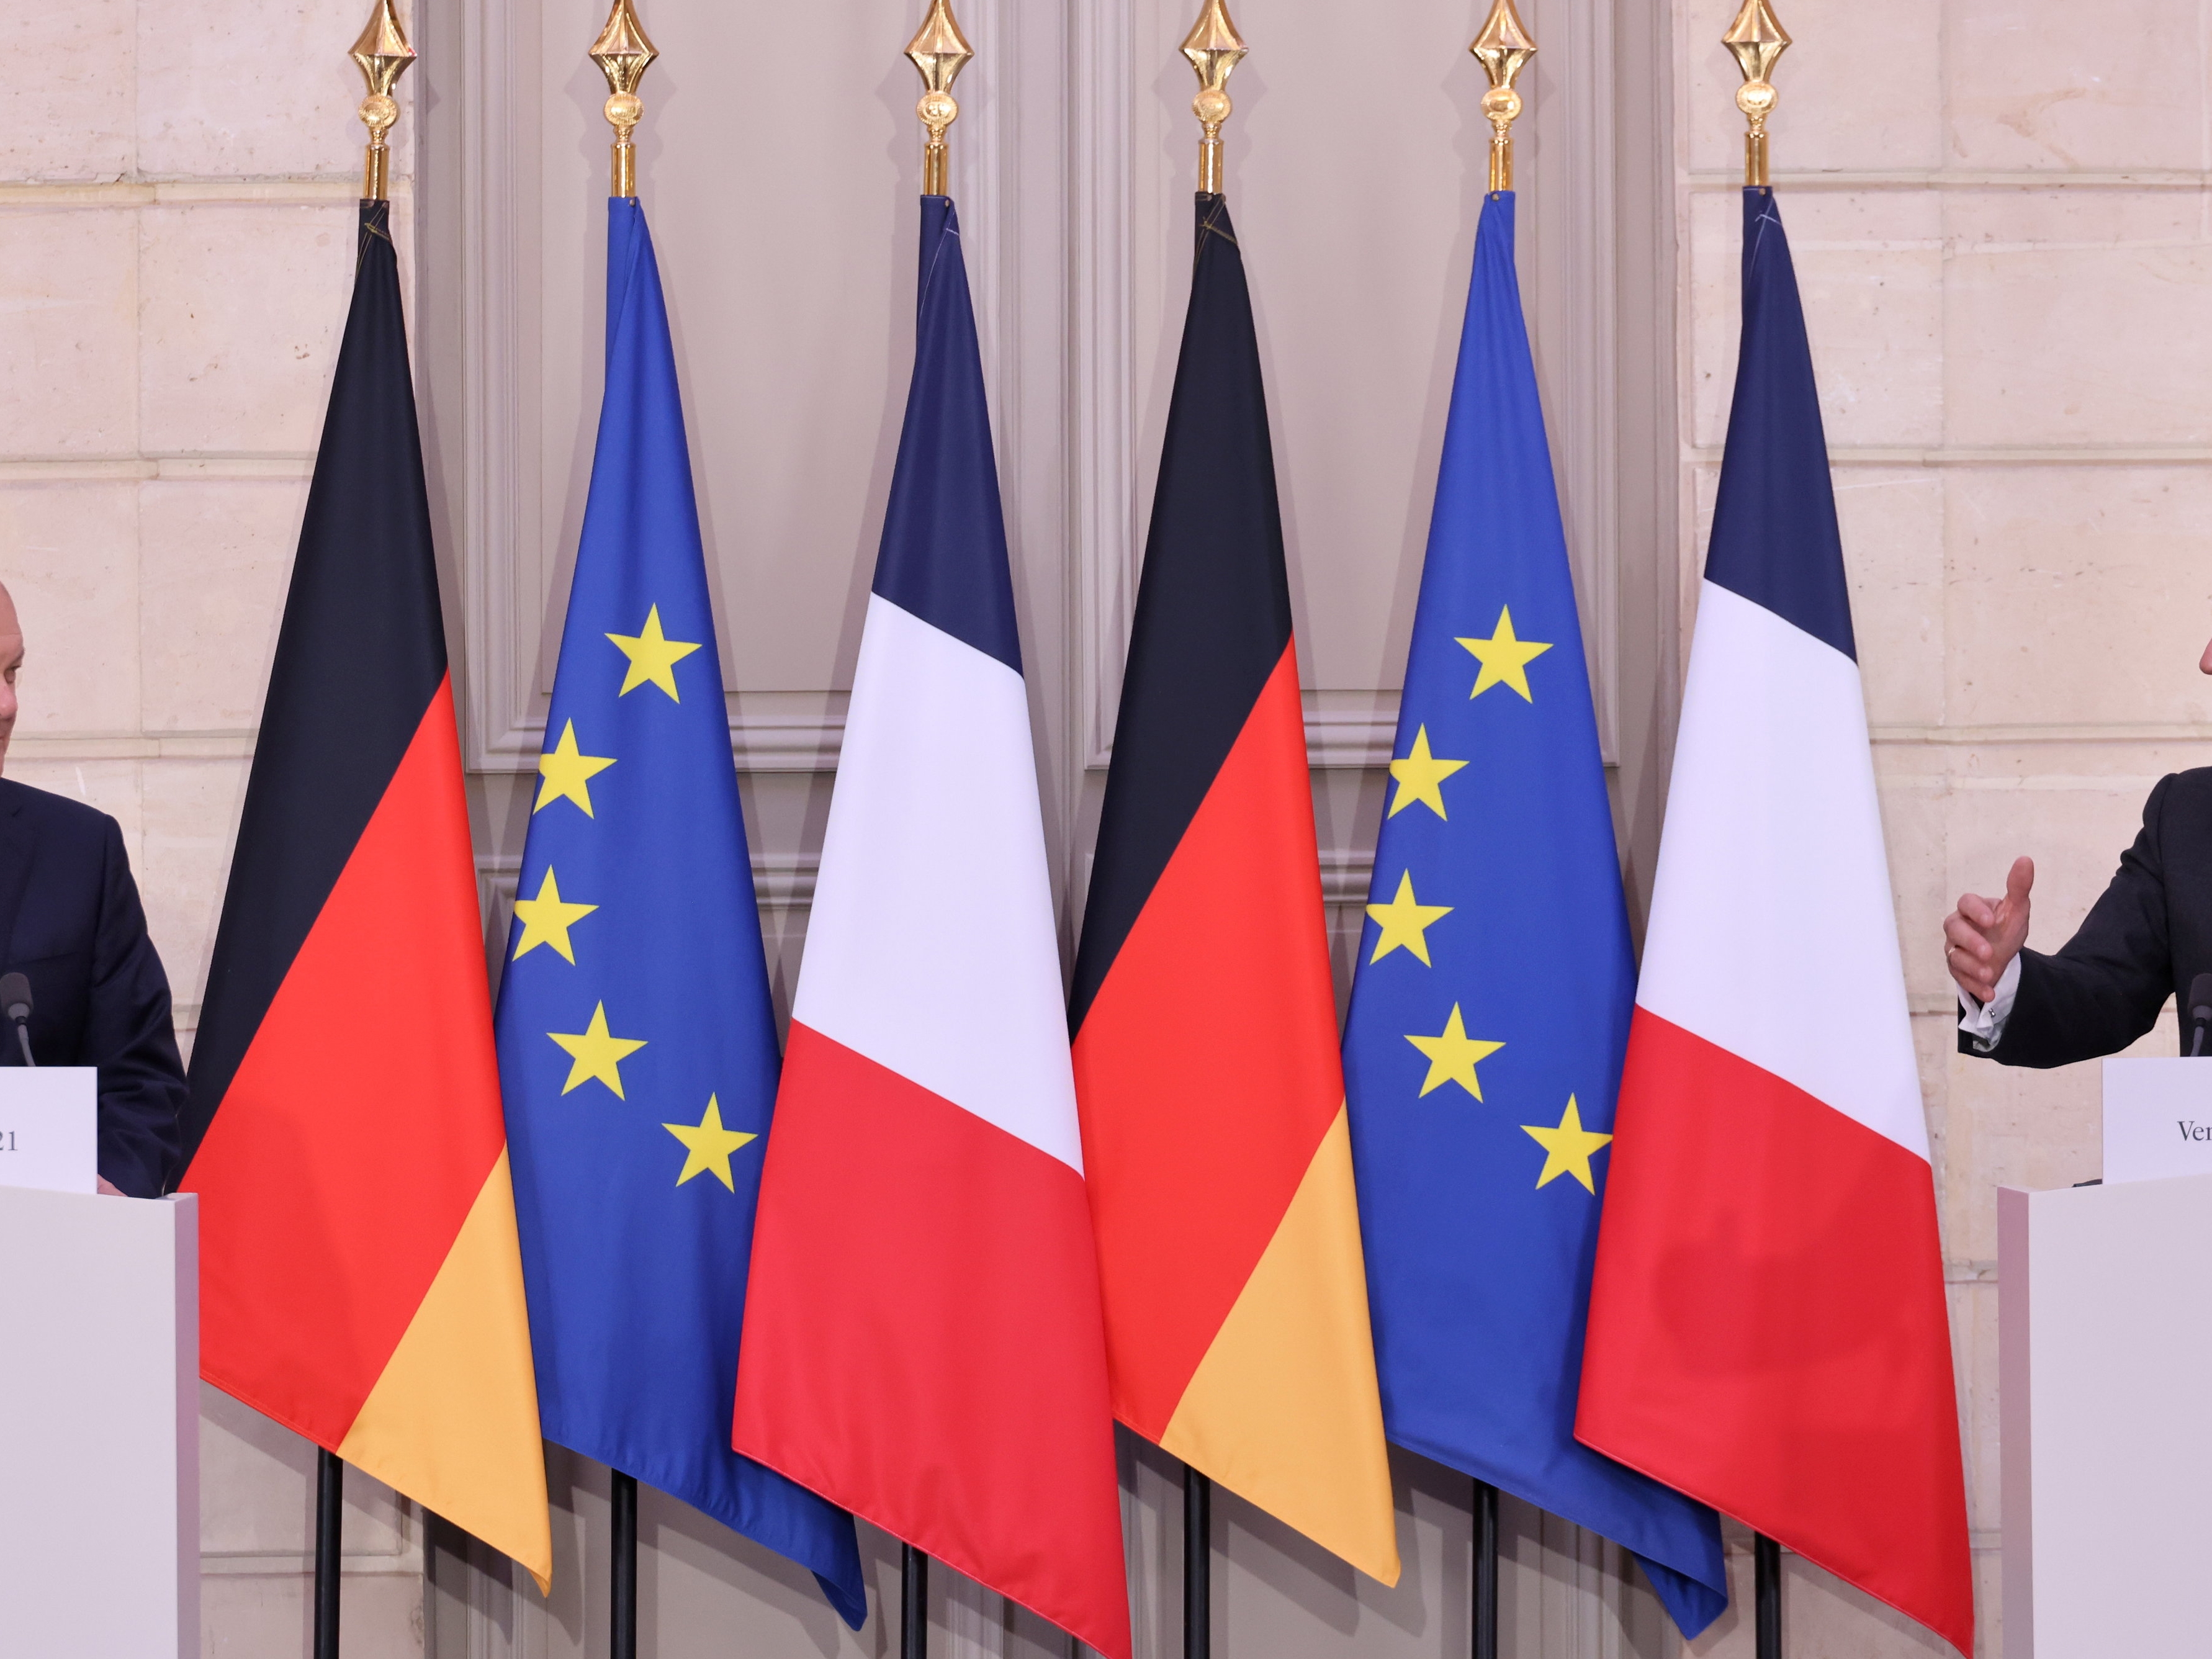 Drapeaux allemand, français, européen